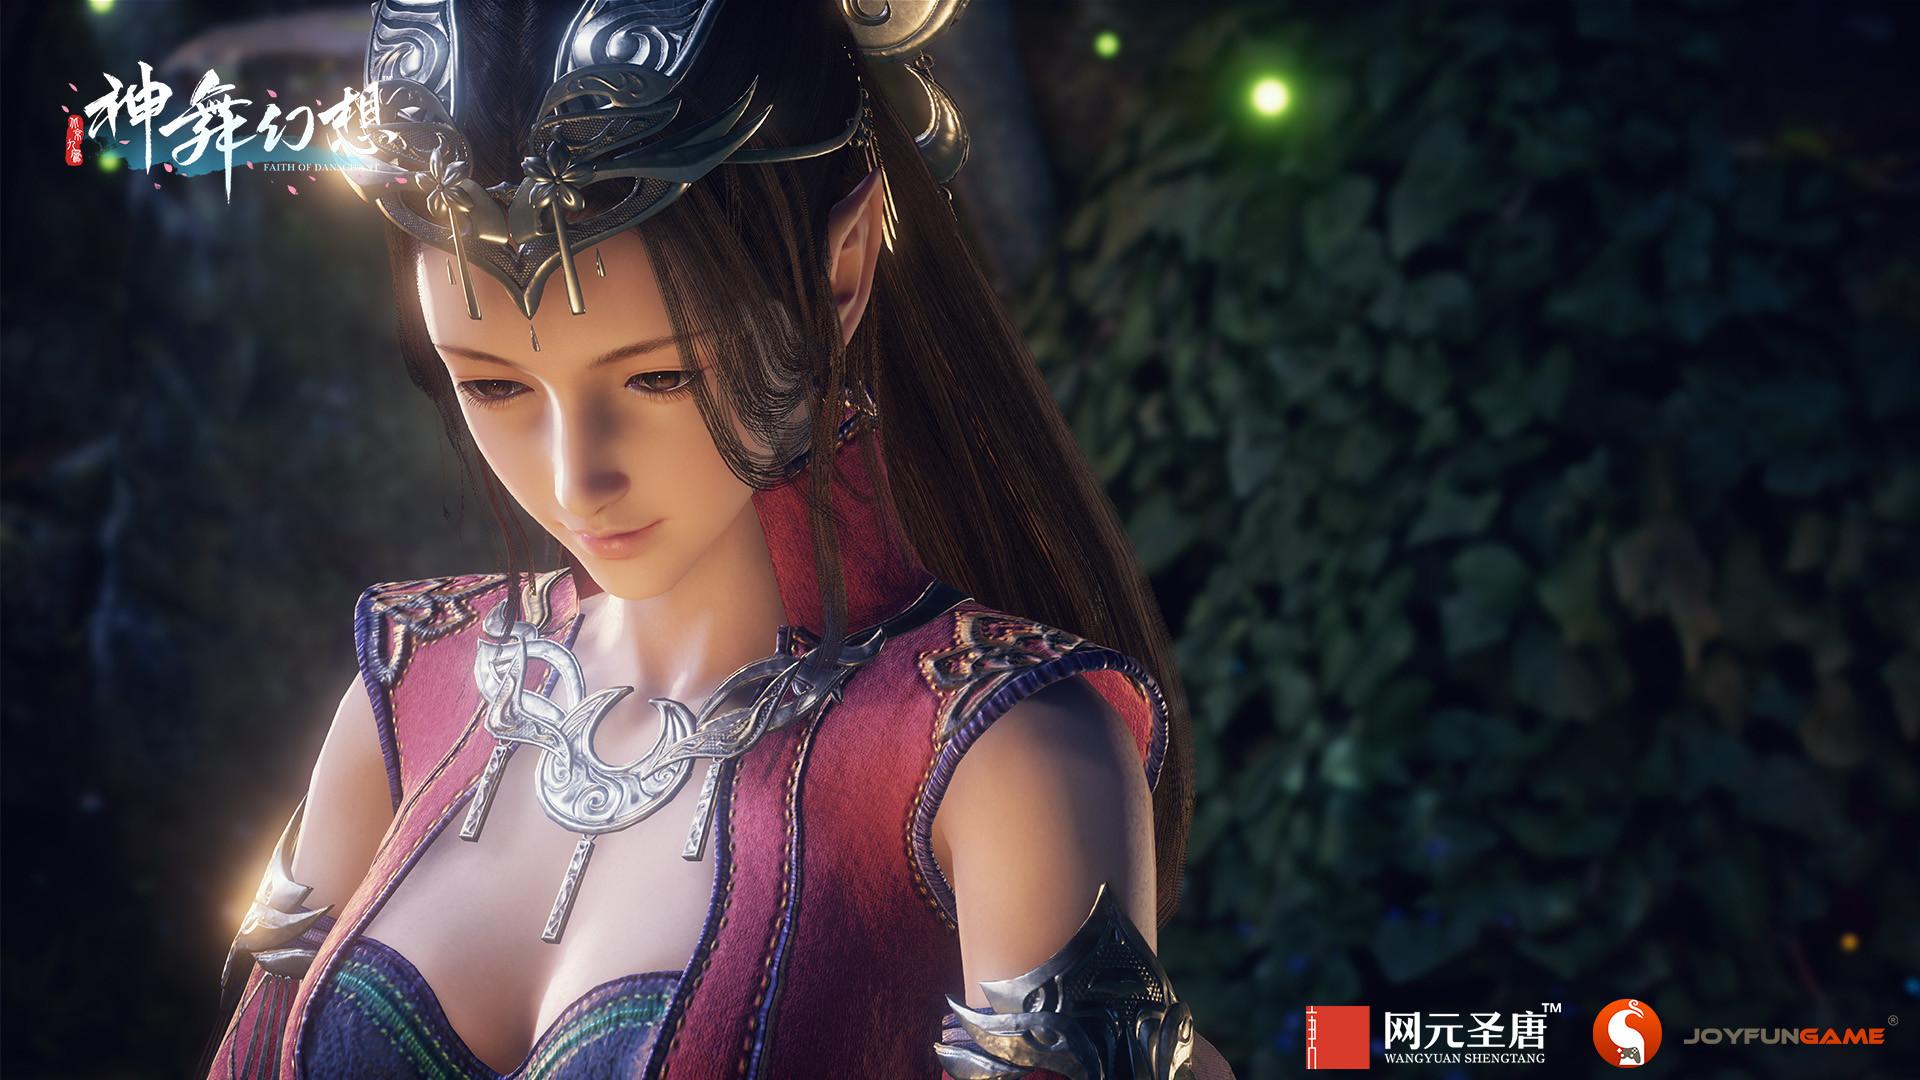 Screenshot №2 from game 神舞幻想 Faith of Danschant